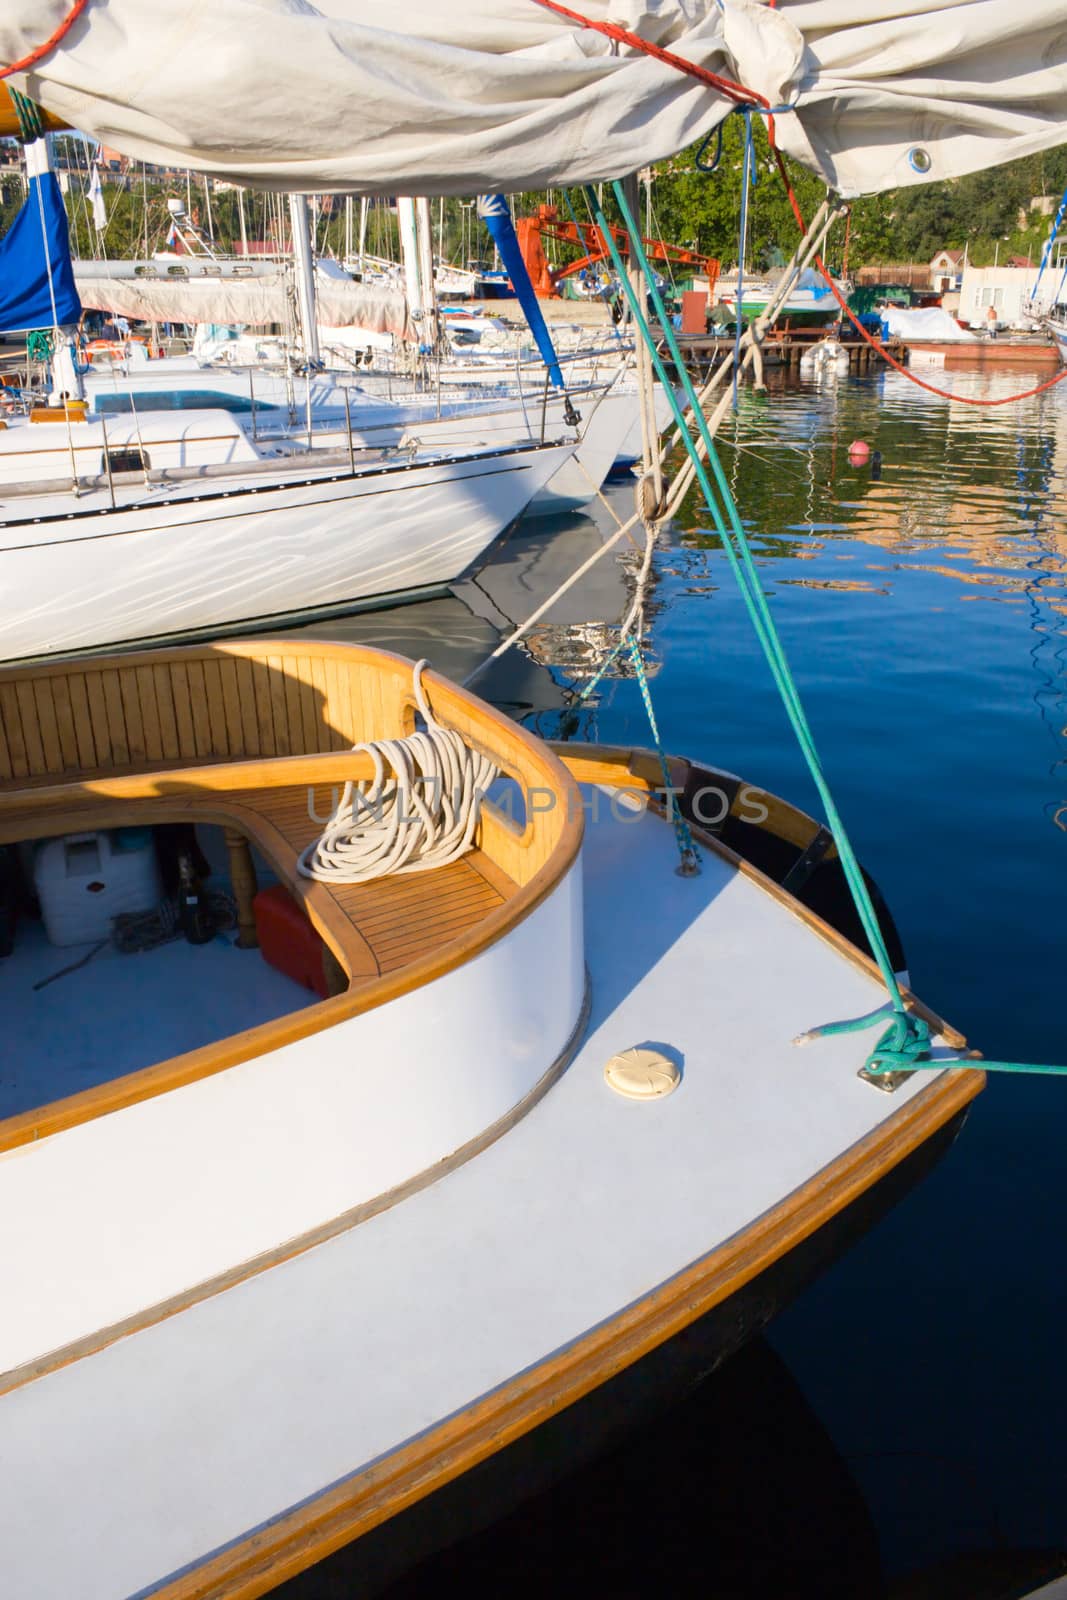 Luxury watercraft await their next outing. Vladivostok marina.